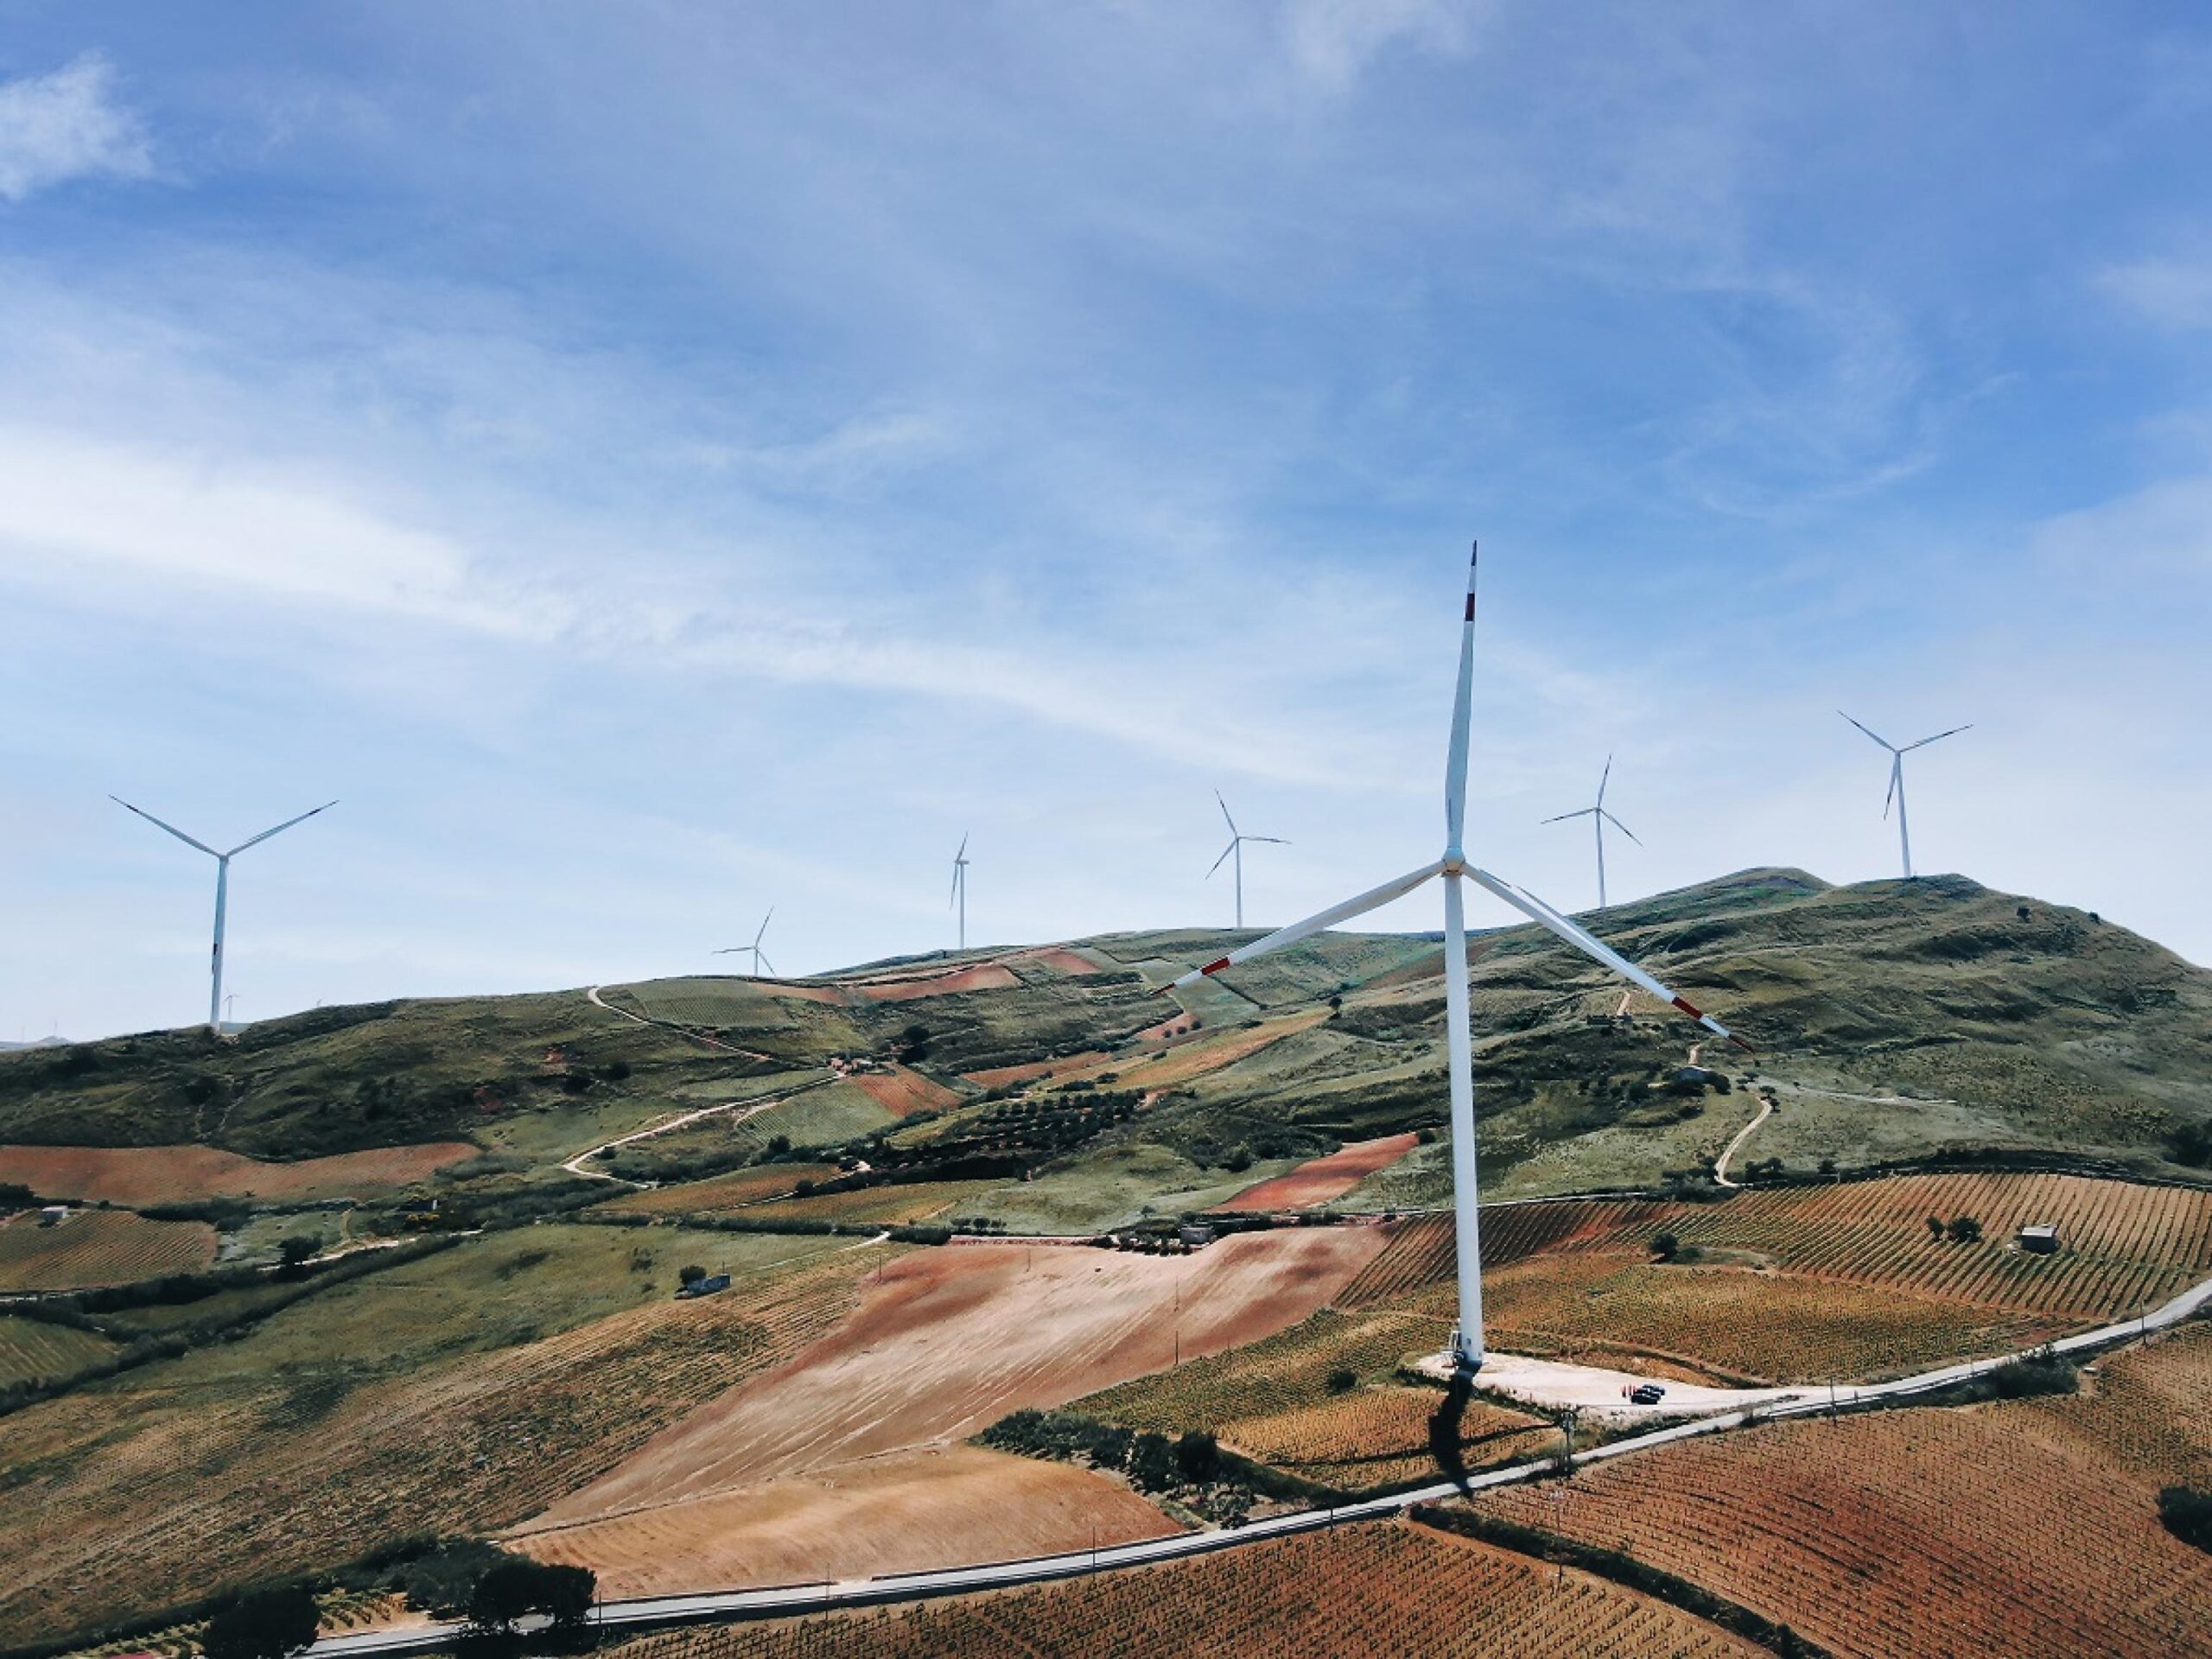 Addio battaglie per il paesaggio contro le pale eoliche? Brutte notizie per Sgarbi: l’emendamento che accelera sugli impianti di energie rinnovabili